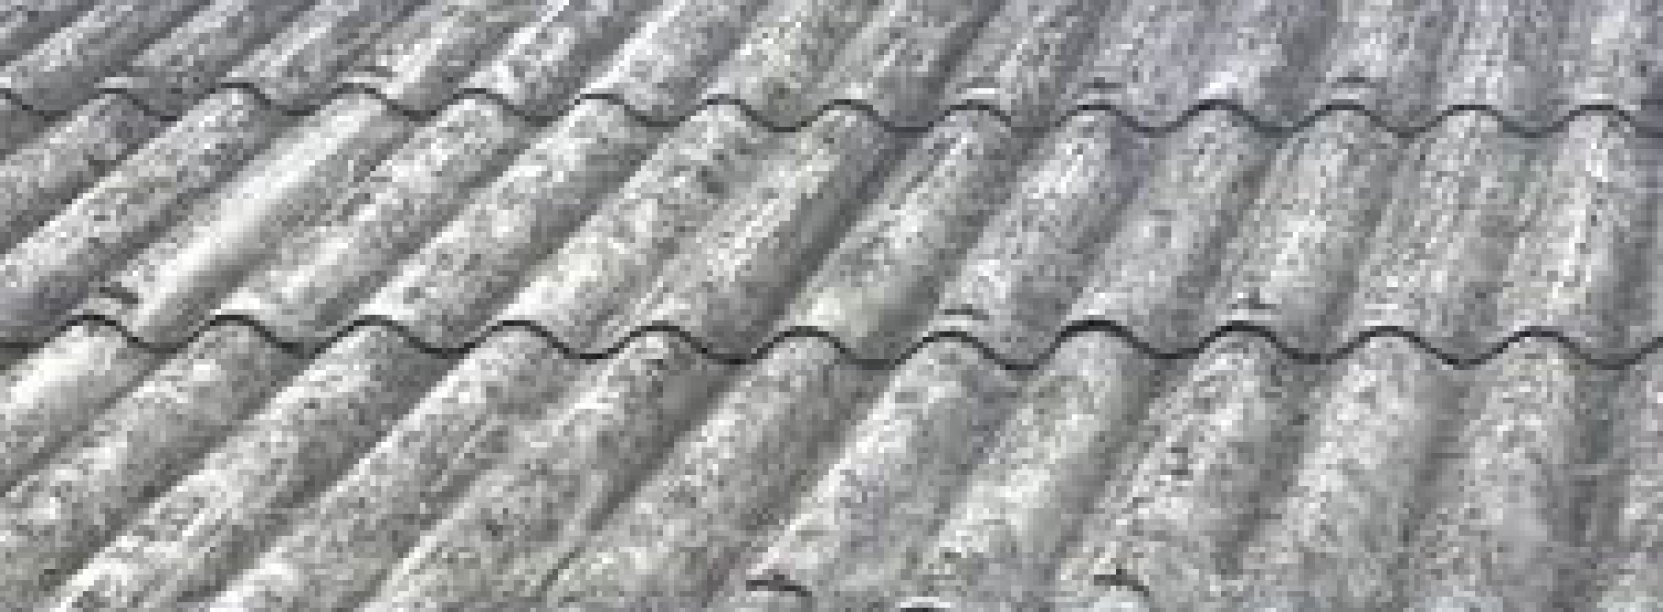 Zbliżenie pokrycia dachu z płyty azbestowej